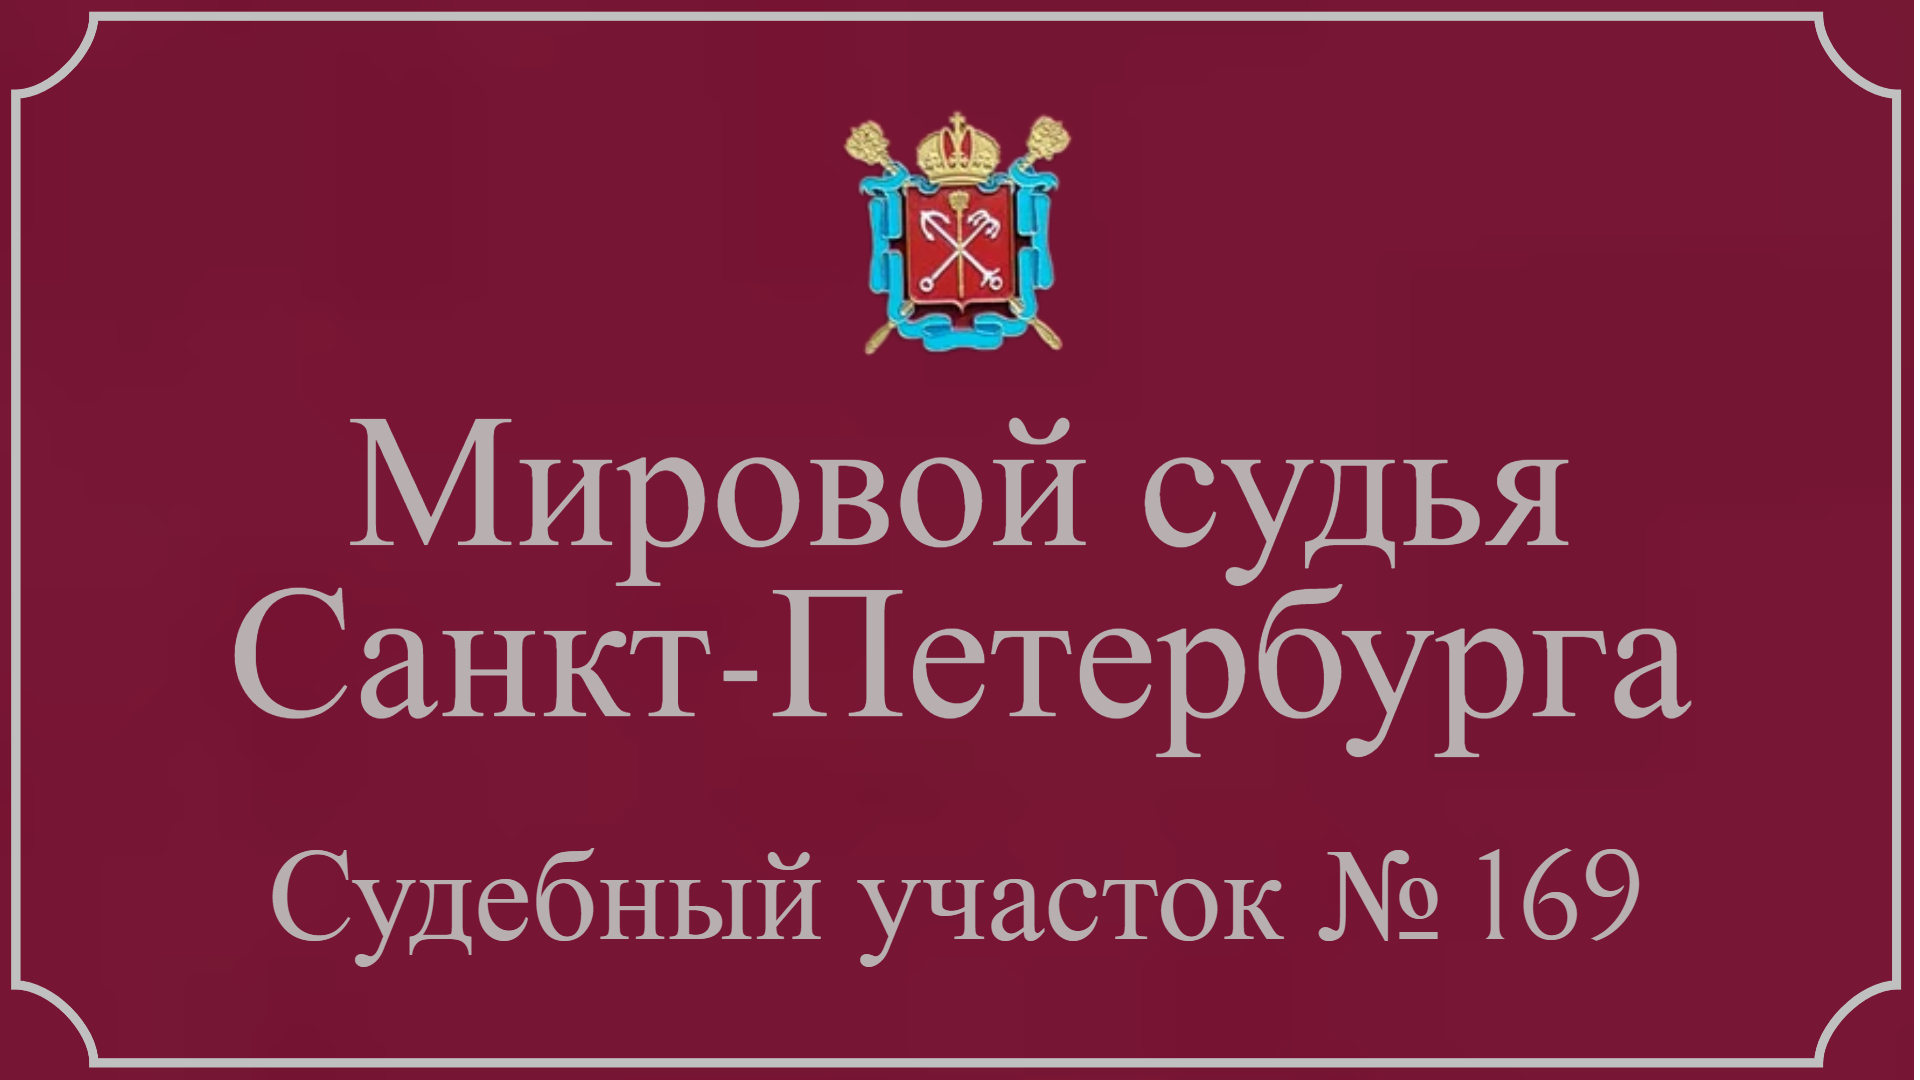 Информация по 169 судебному участку в Санкт-Петербурге.